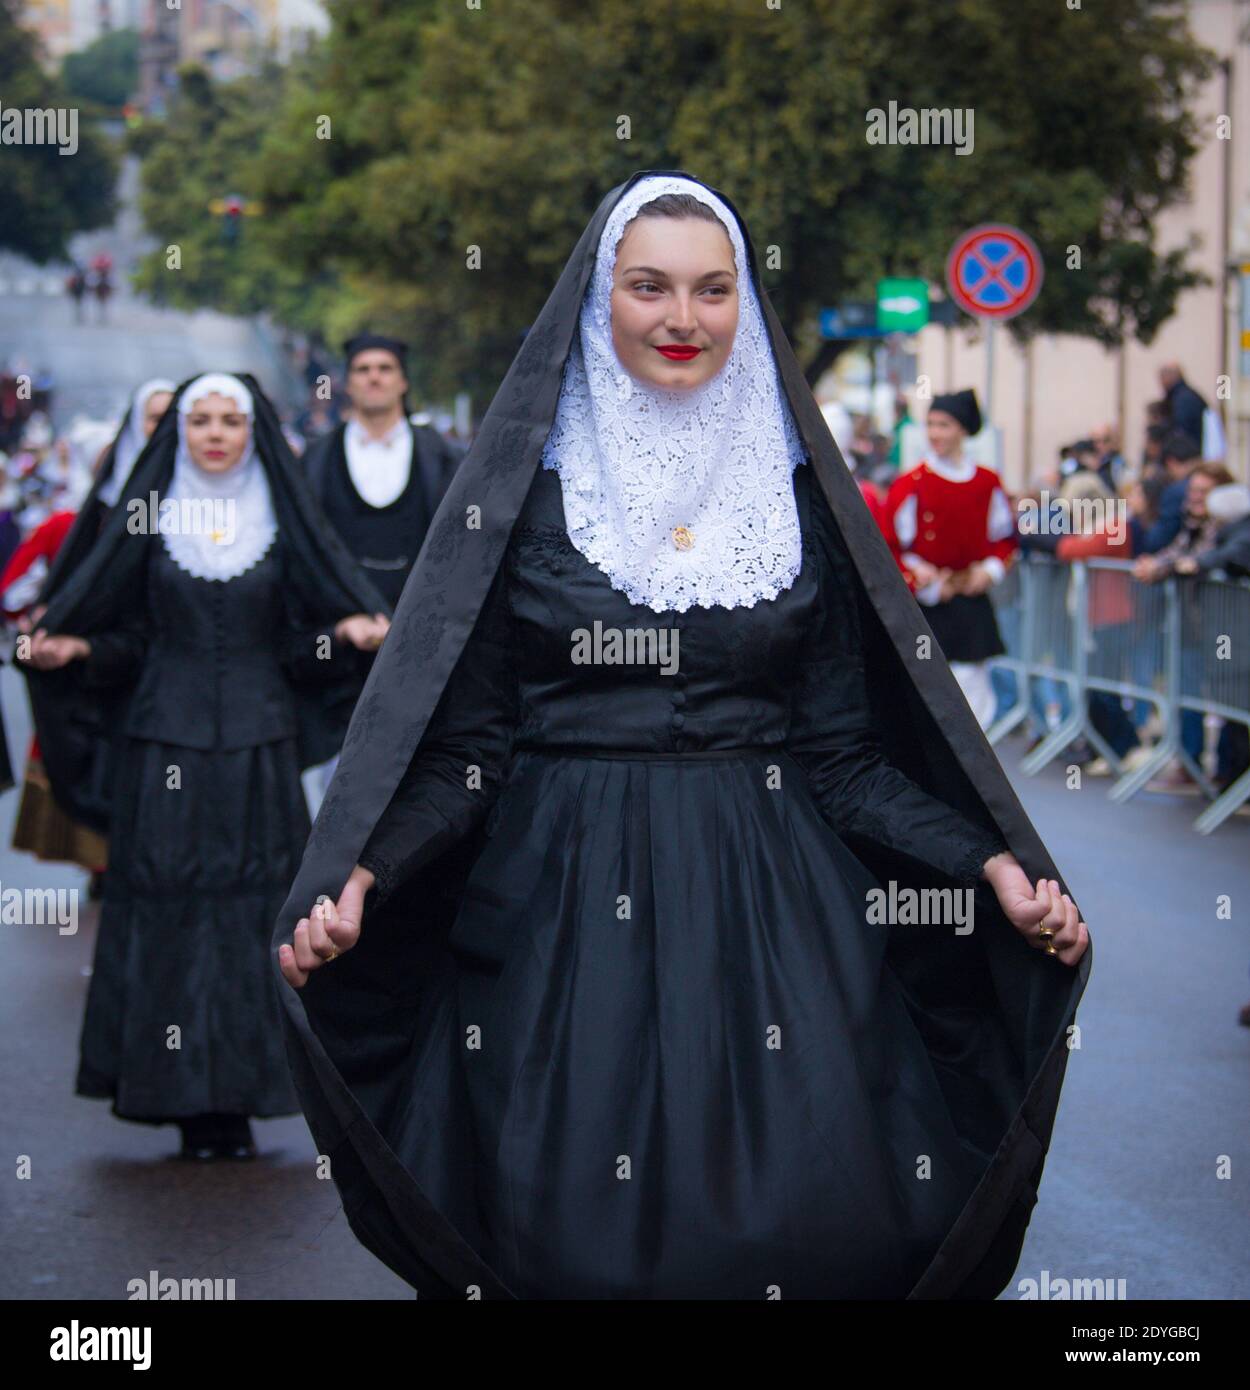 SASSARI, ITALY - May 19th, 2019- Sardinian cavalcade, traditional Sardinian clothes, Tempio Pausanian dress Stock Photo